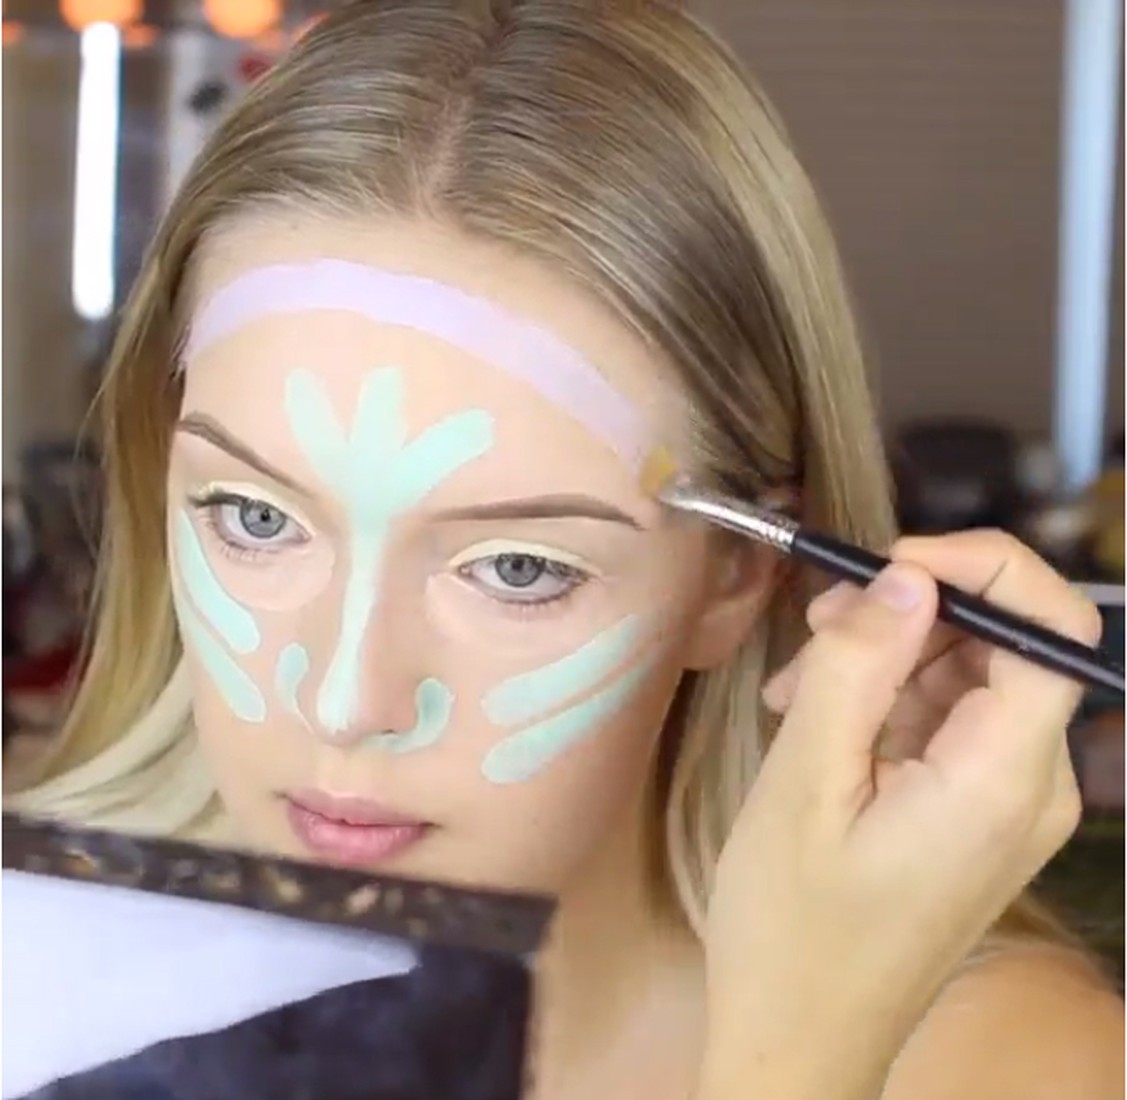 10 новых техник макияжа: учимся модному визажу по бесплатным видео - все курсы онлайн